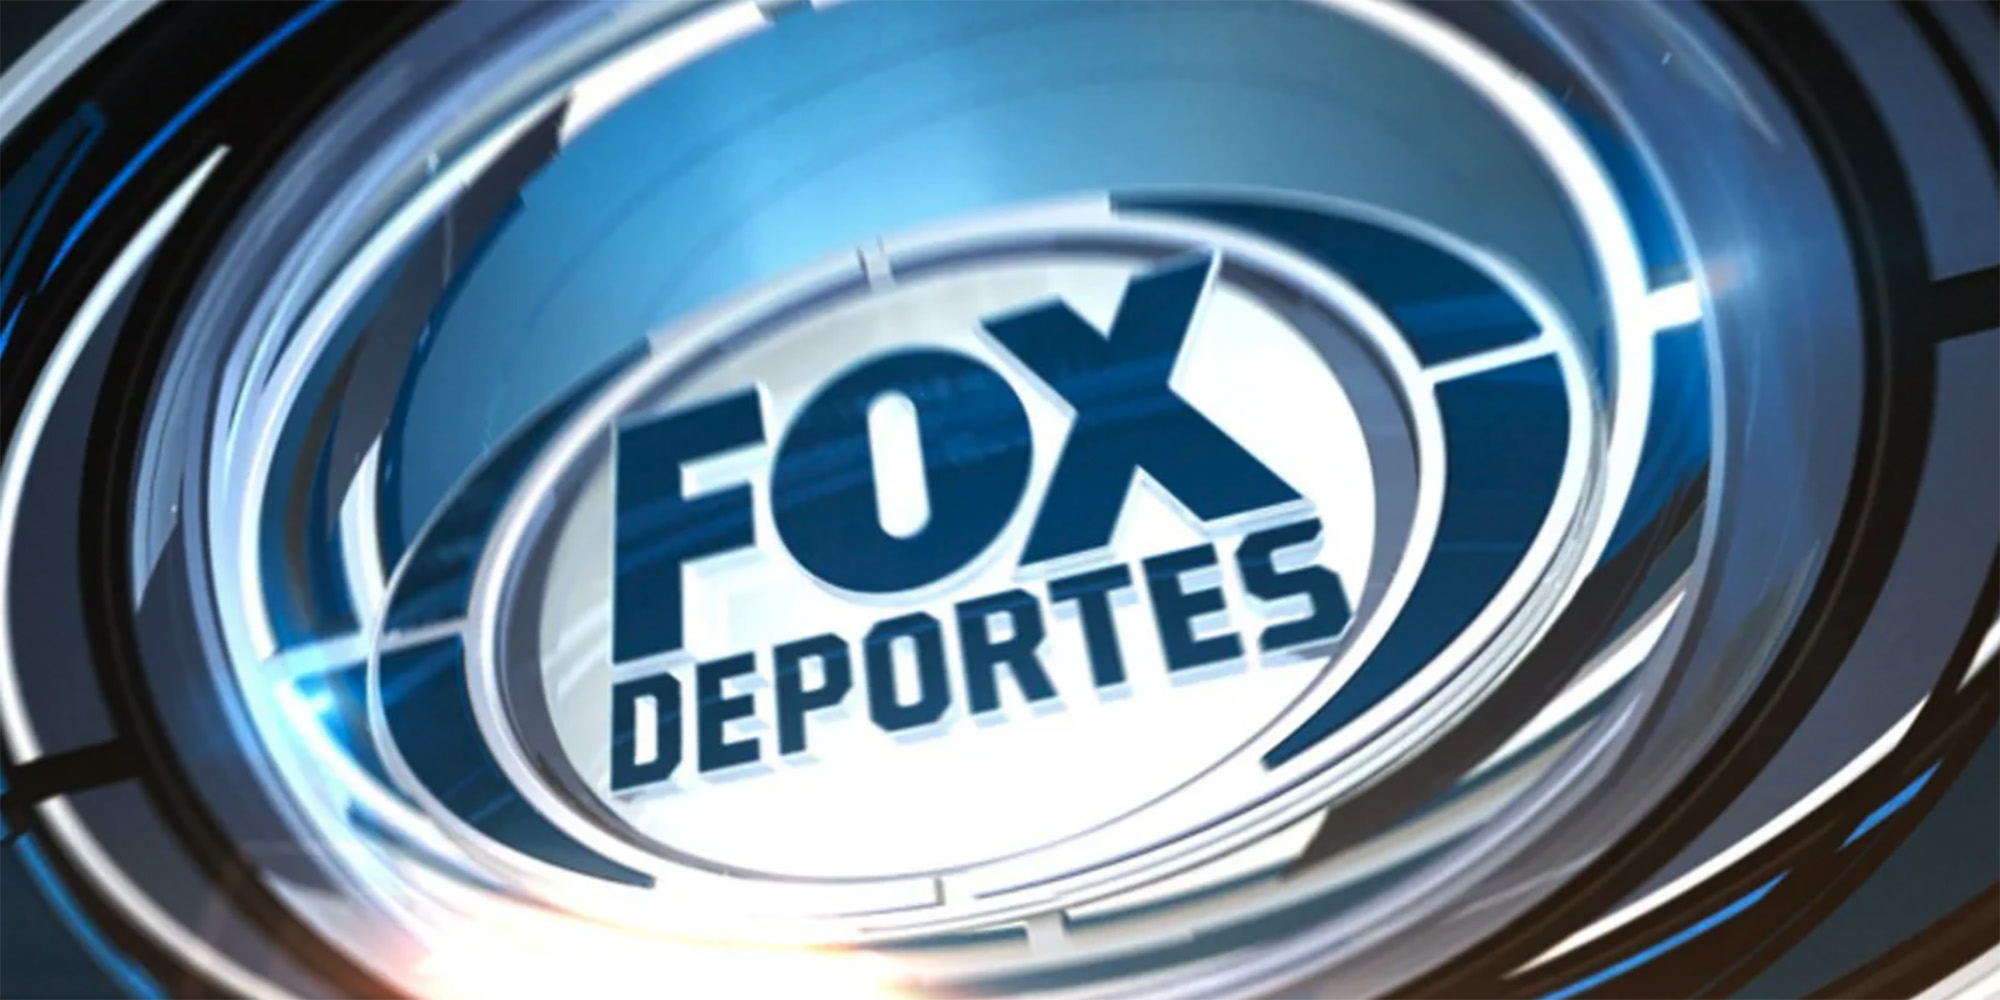 Stream Fox Deportes Live Liga MX y MLS Futbol, Beisbol, Boxeo y Mas